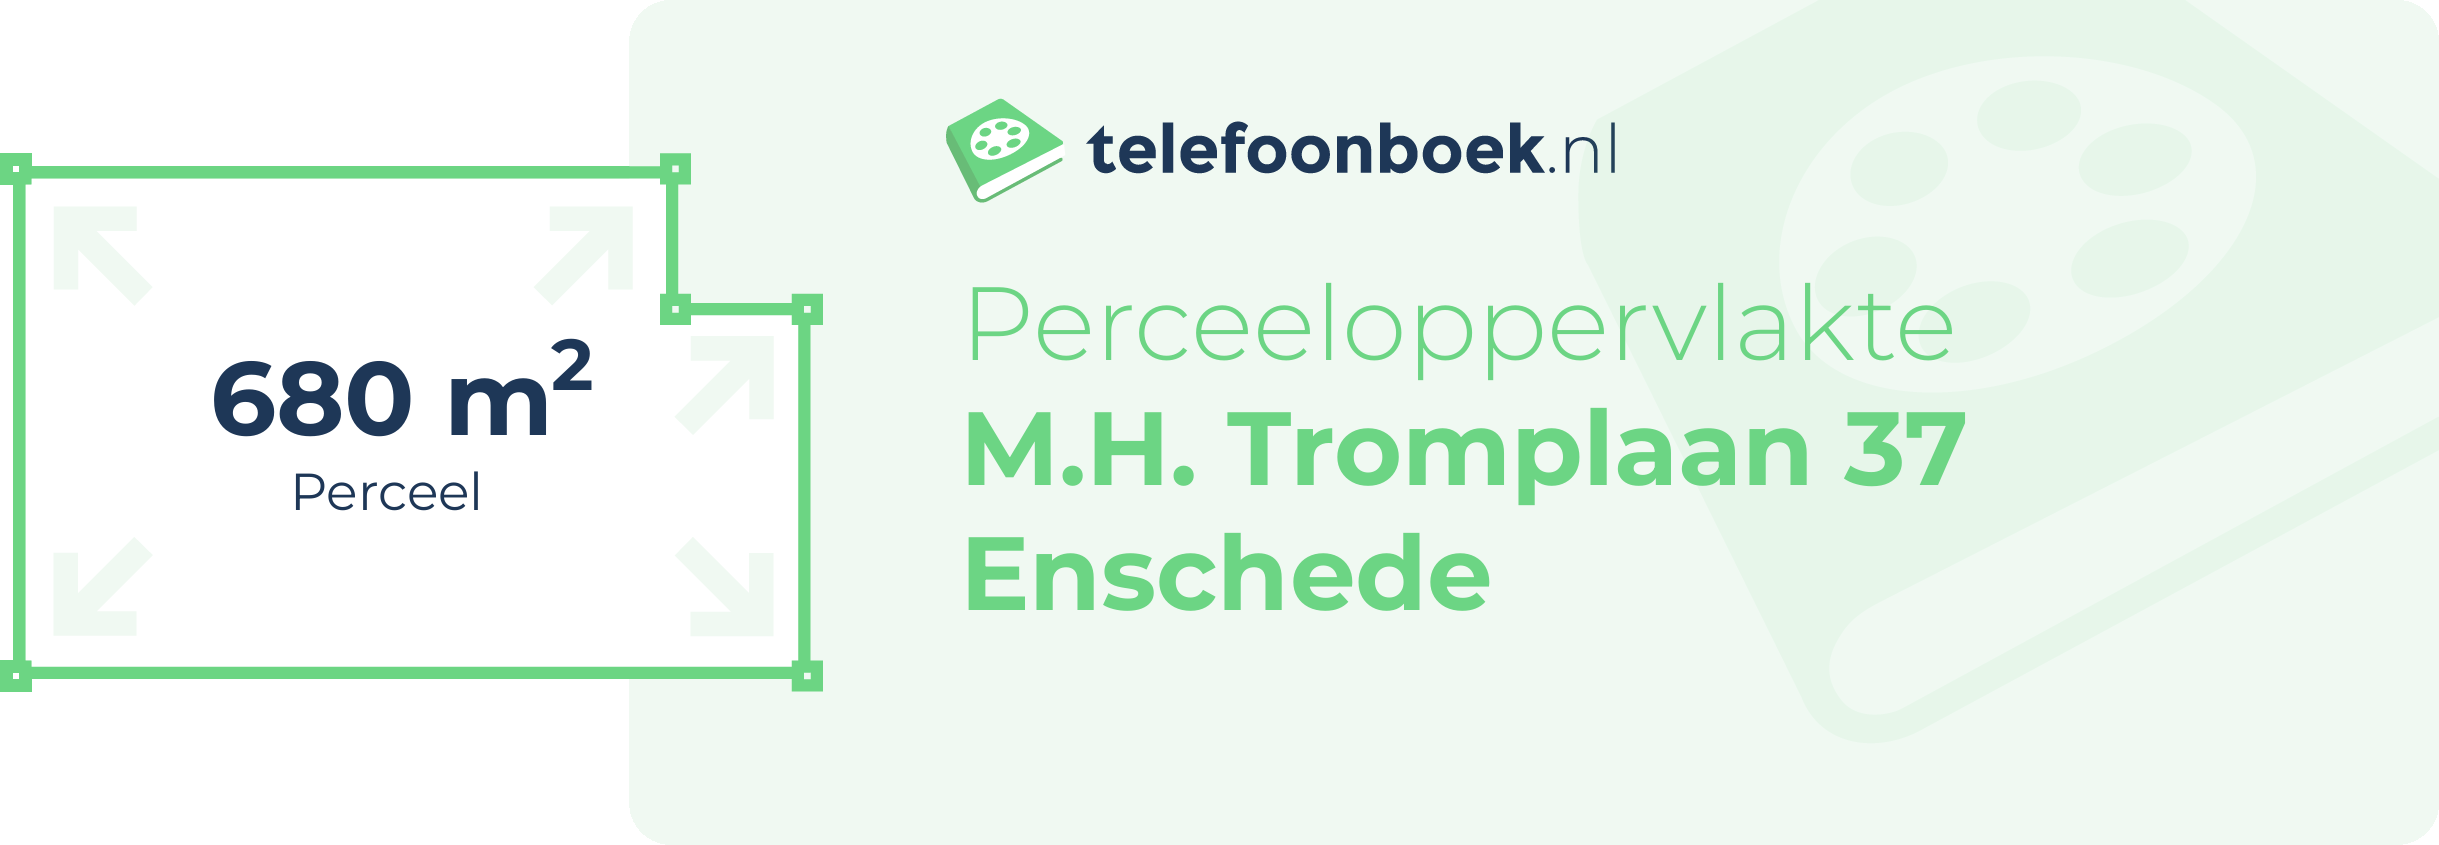 Perceeloppervlakte M.H. Tromplaan 37 Enschede